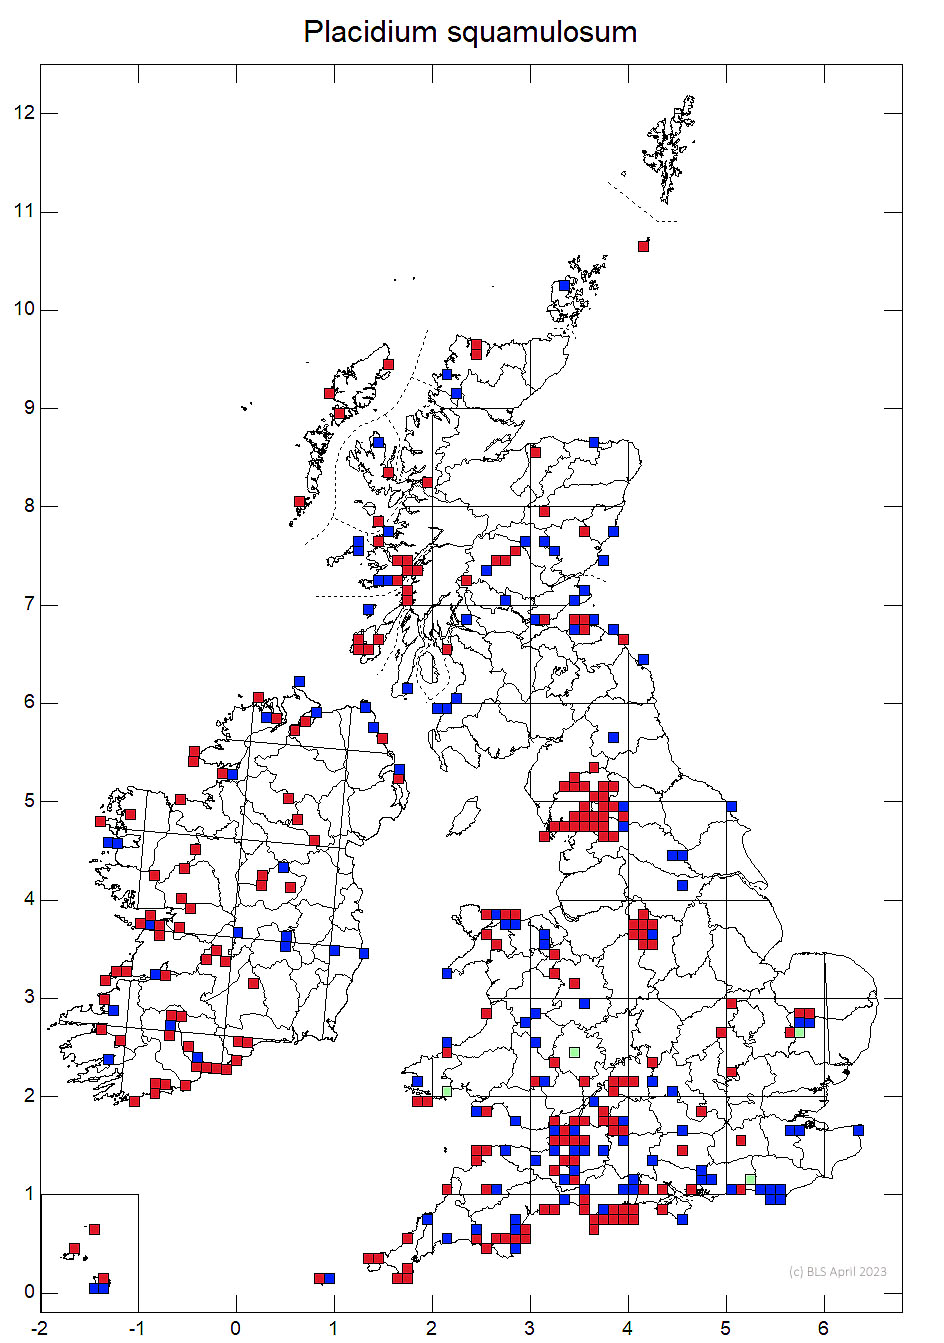 Placidium squamulosum 10km sq distribution map